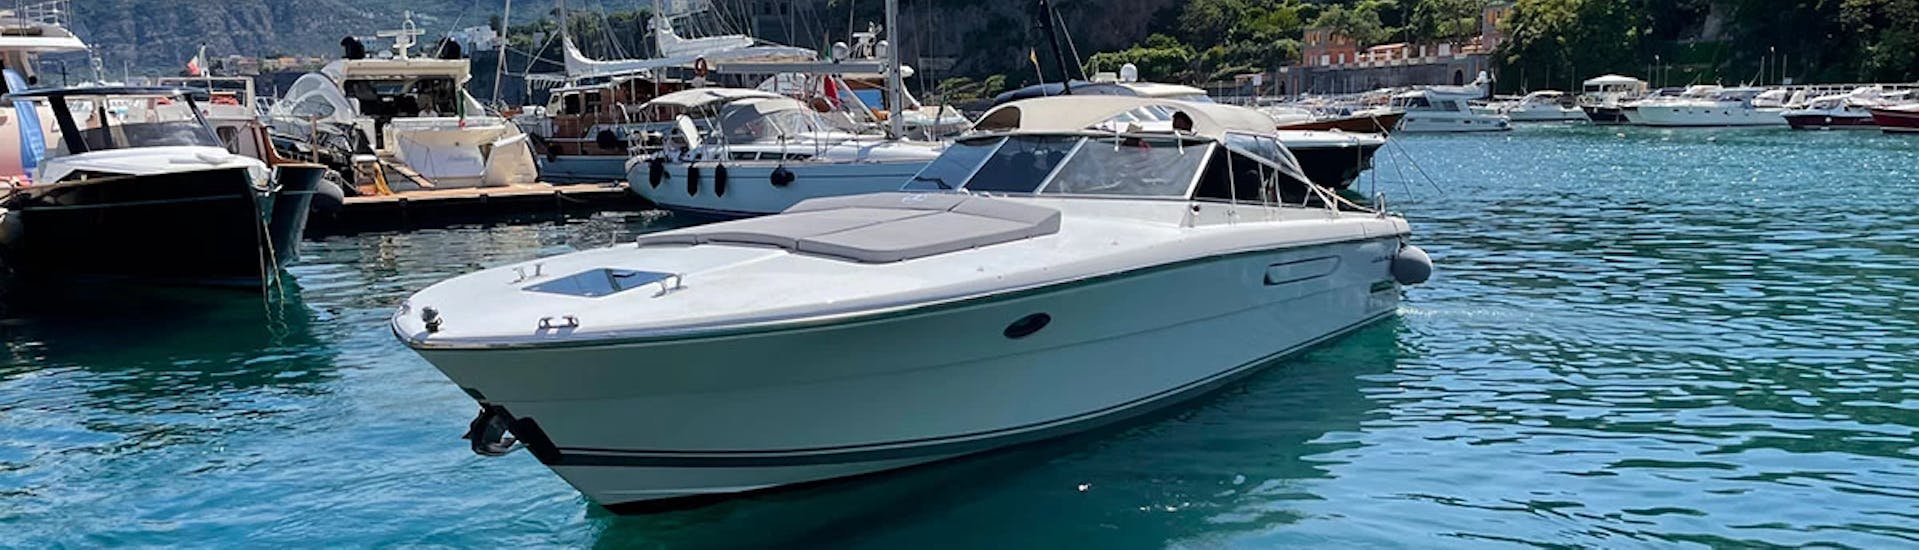 Das Boot Itama 38, eines der beiden verfügbaren Boote für die Private Bootstour von Capri nach Amalfi und Positano mit Schnorcheln.